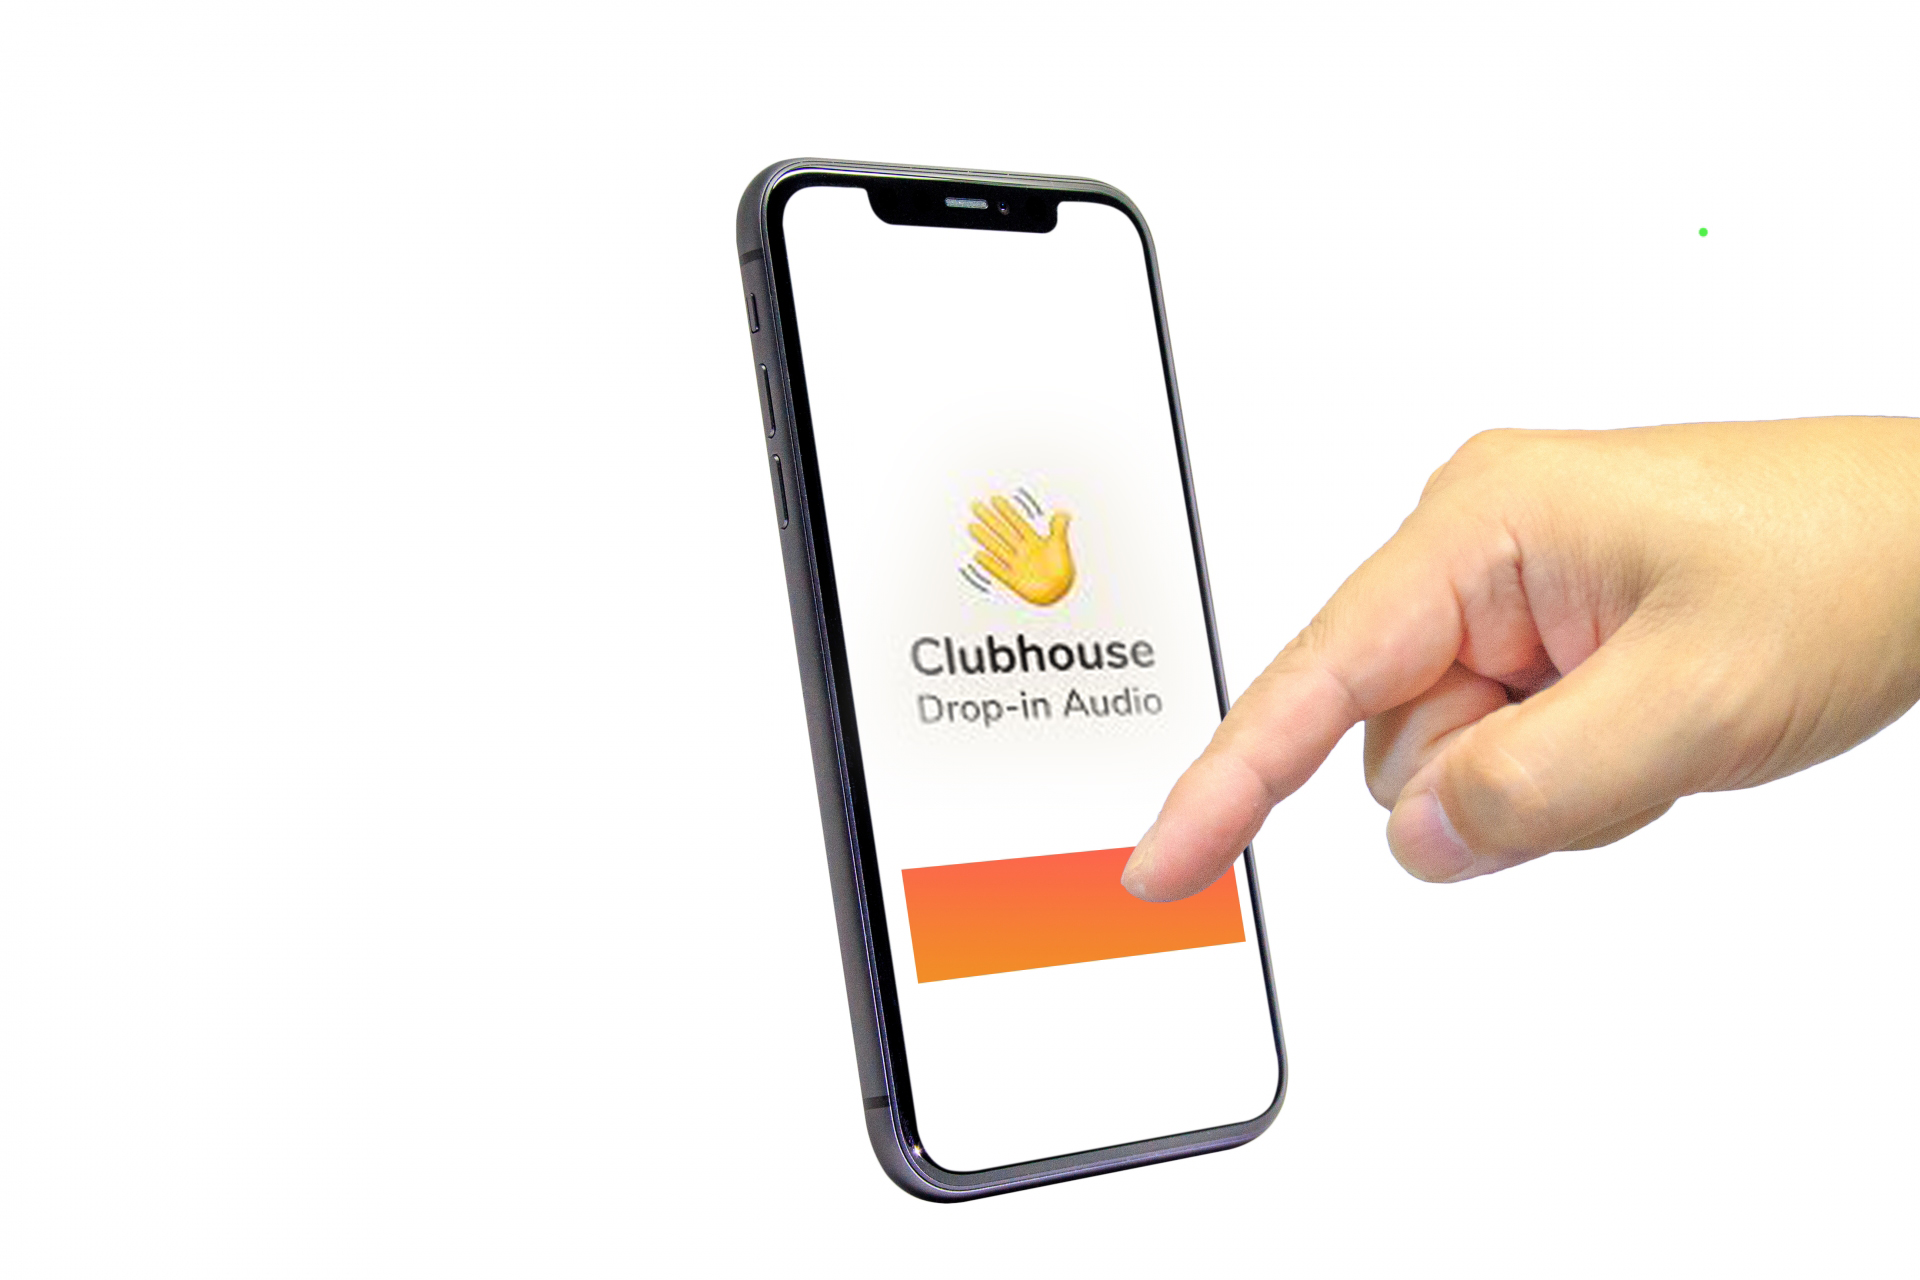 「新しいアプリ「Clubhouse」はどうして人気があるの?」のアイキャッチ画像